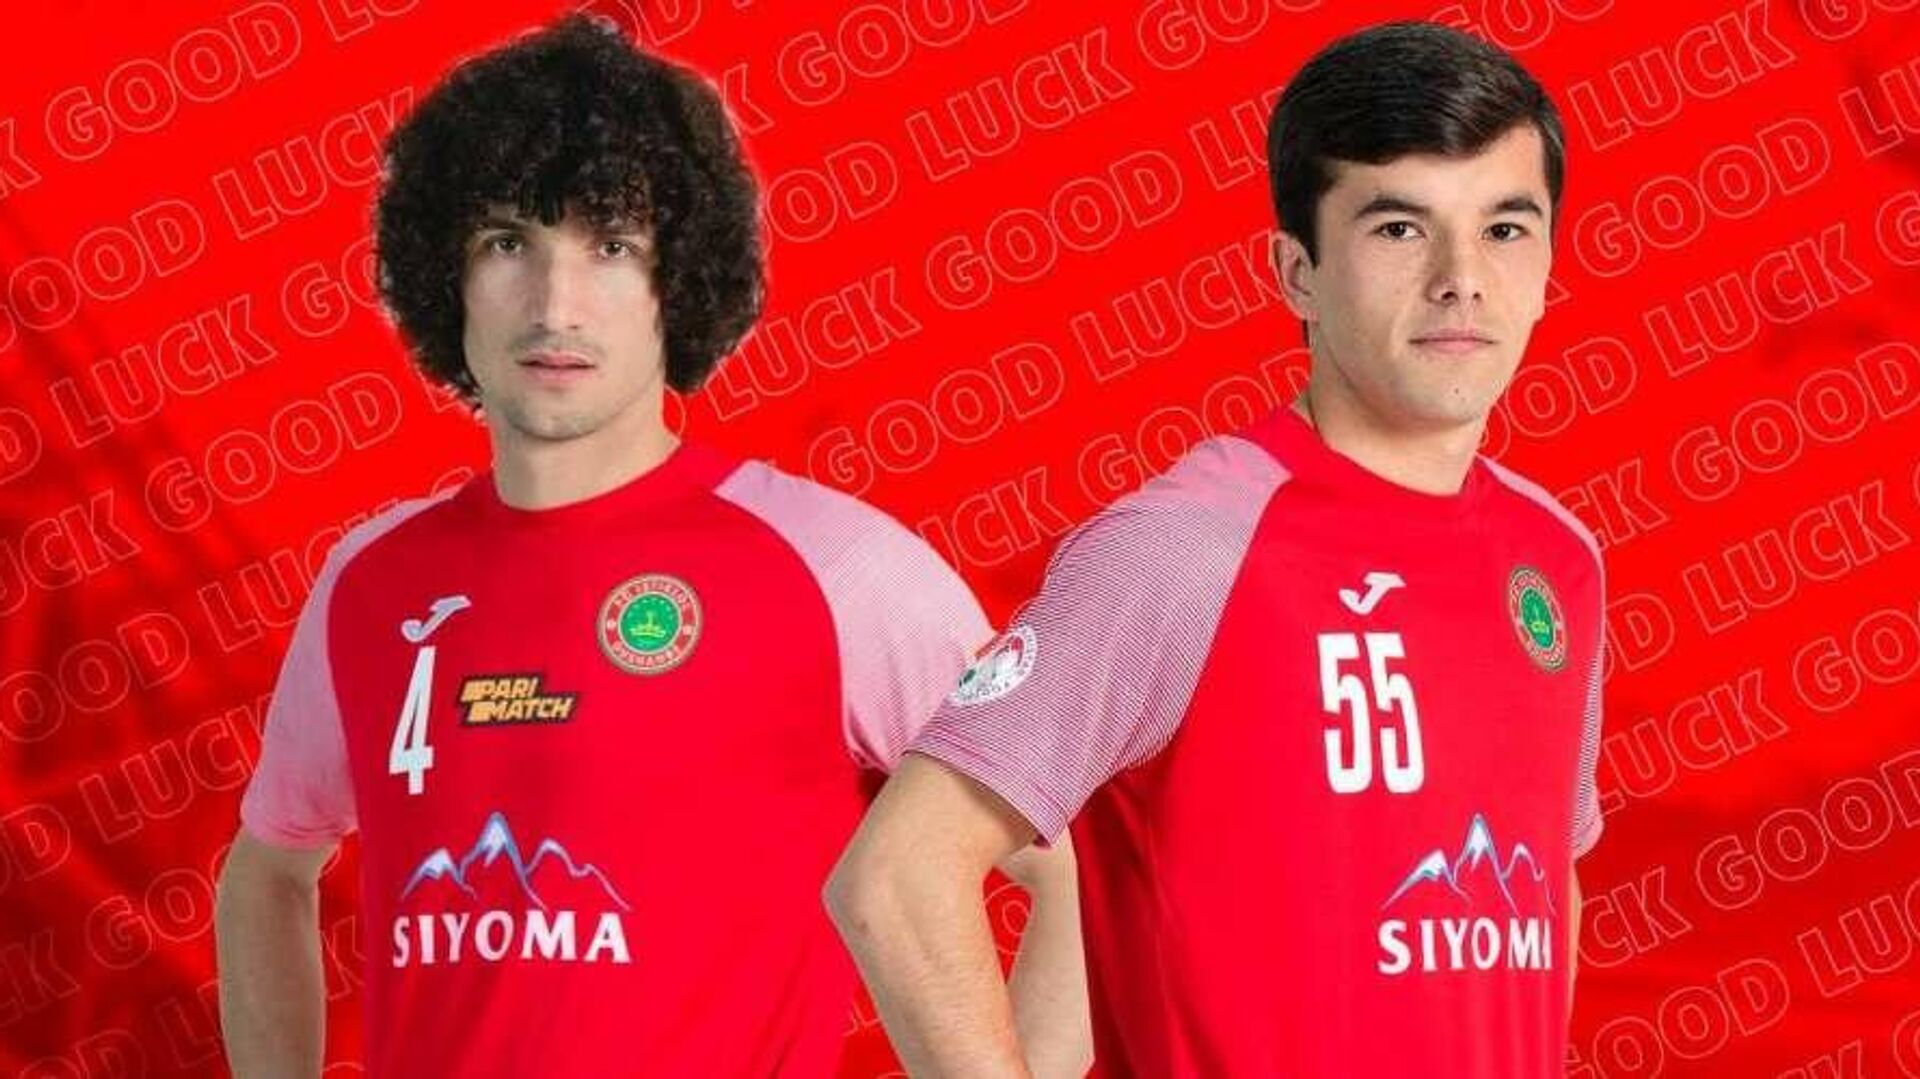 Объявлена стоимость трансфера двух таджикских футболистов в иранский клуб